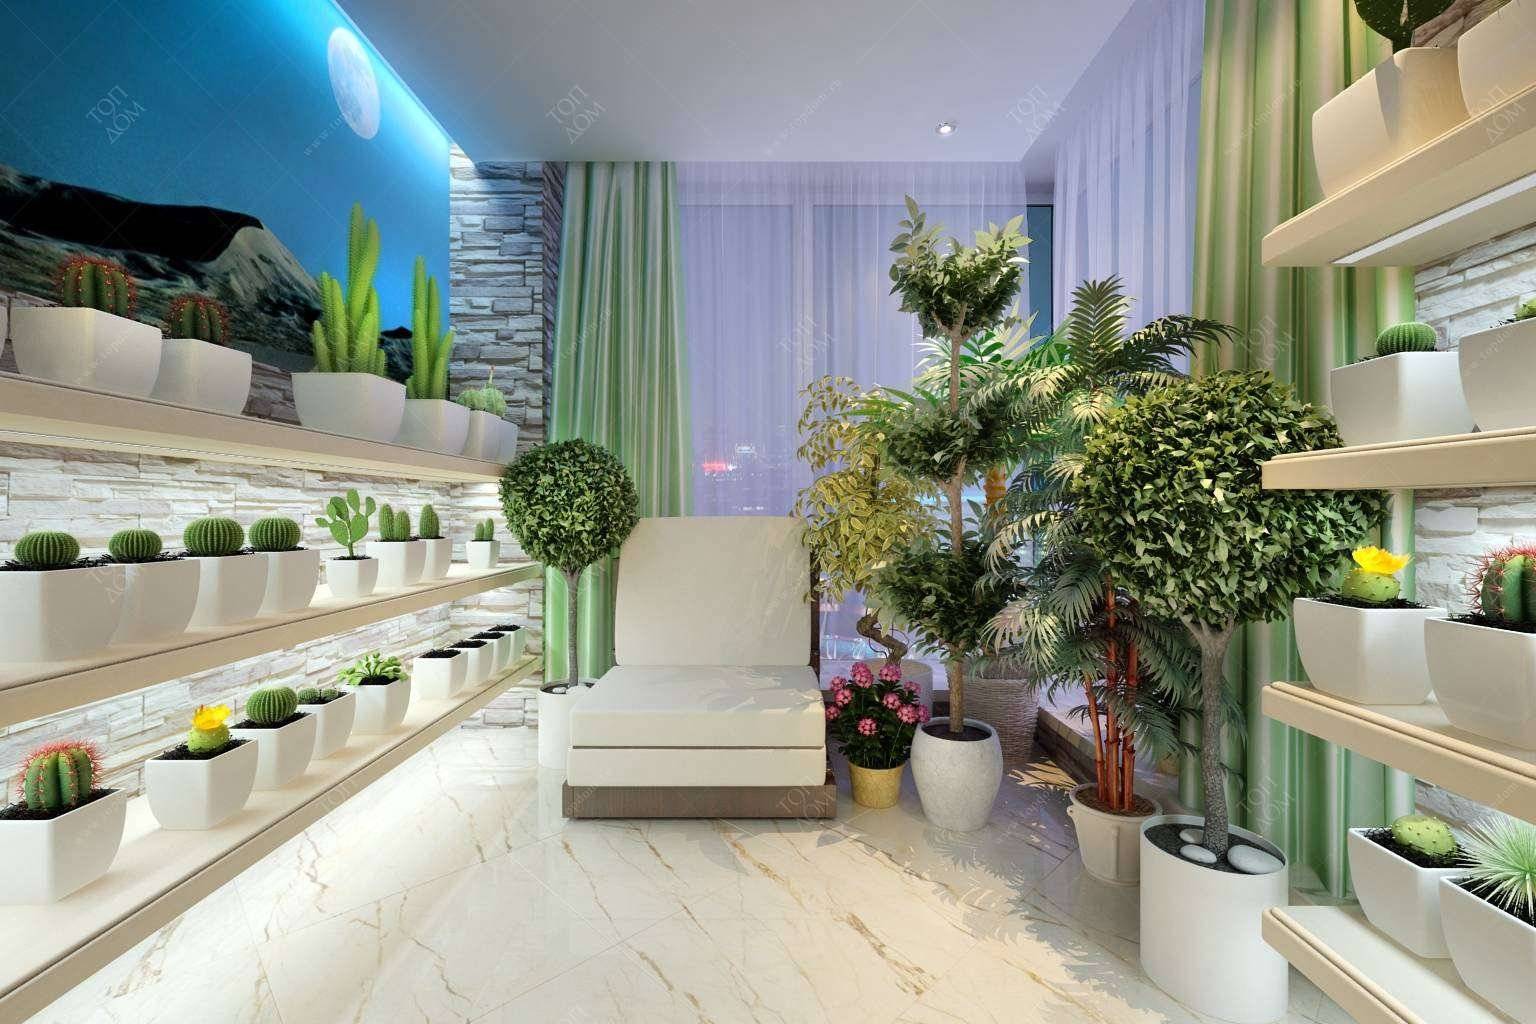 Эко-дизайн и озеленение помещений в доме: польза, виды и топ 7 лучших растений для дома и офиса – обзор + видео